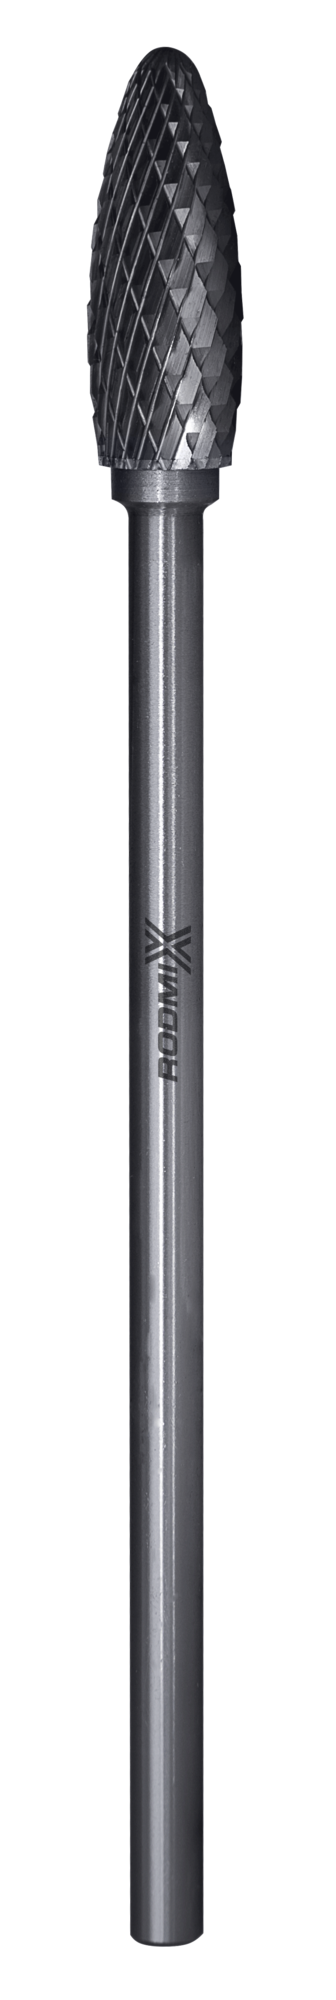 Твердосплавная борфреза по металлу тип H пламевидная удлиненная 12х32 L150 М6 мм двойная насечка